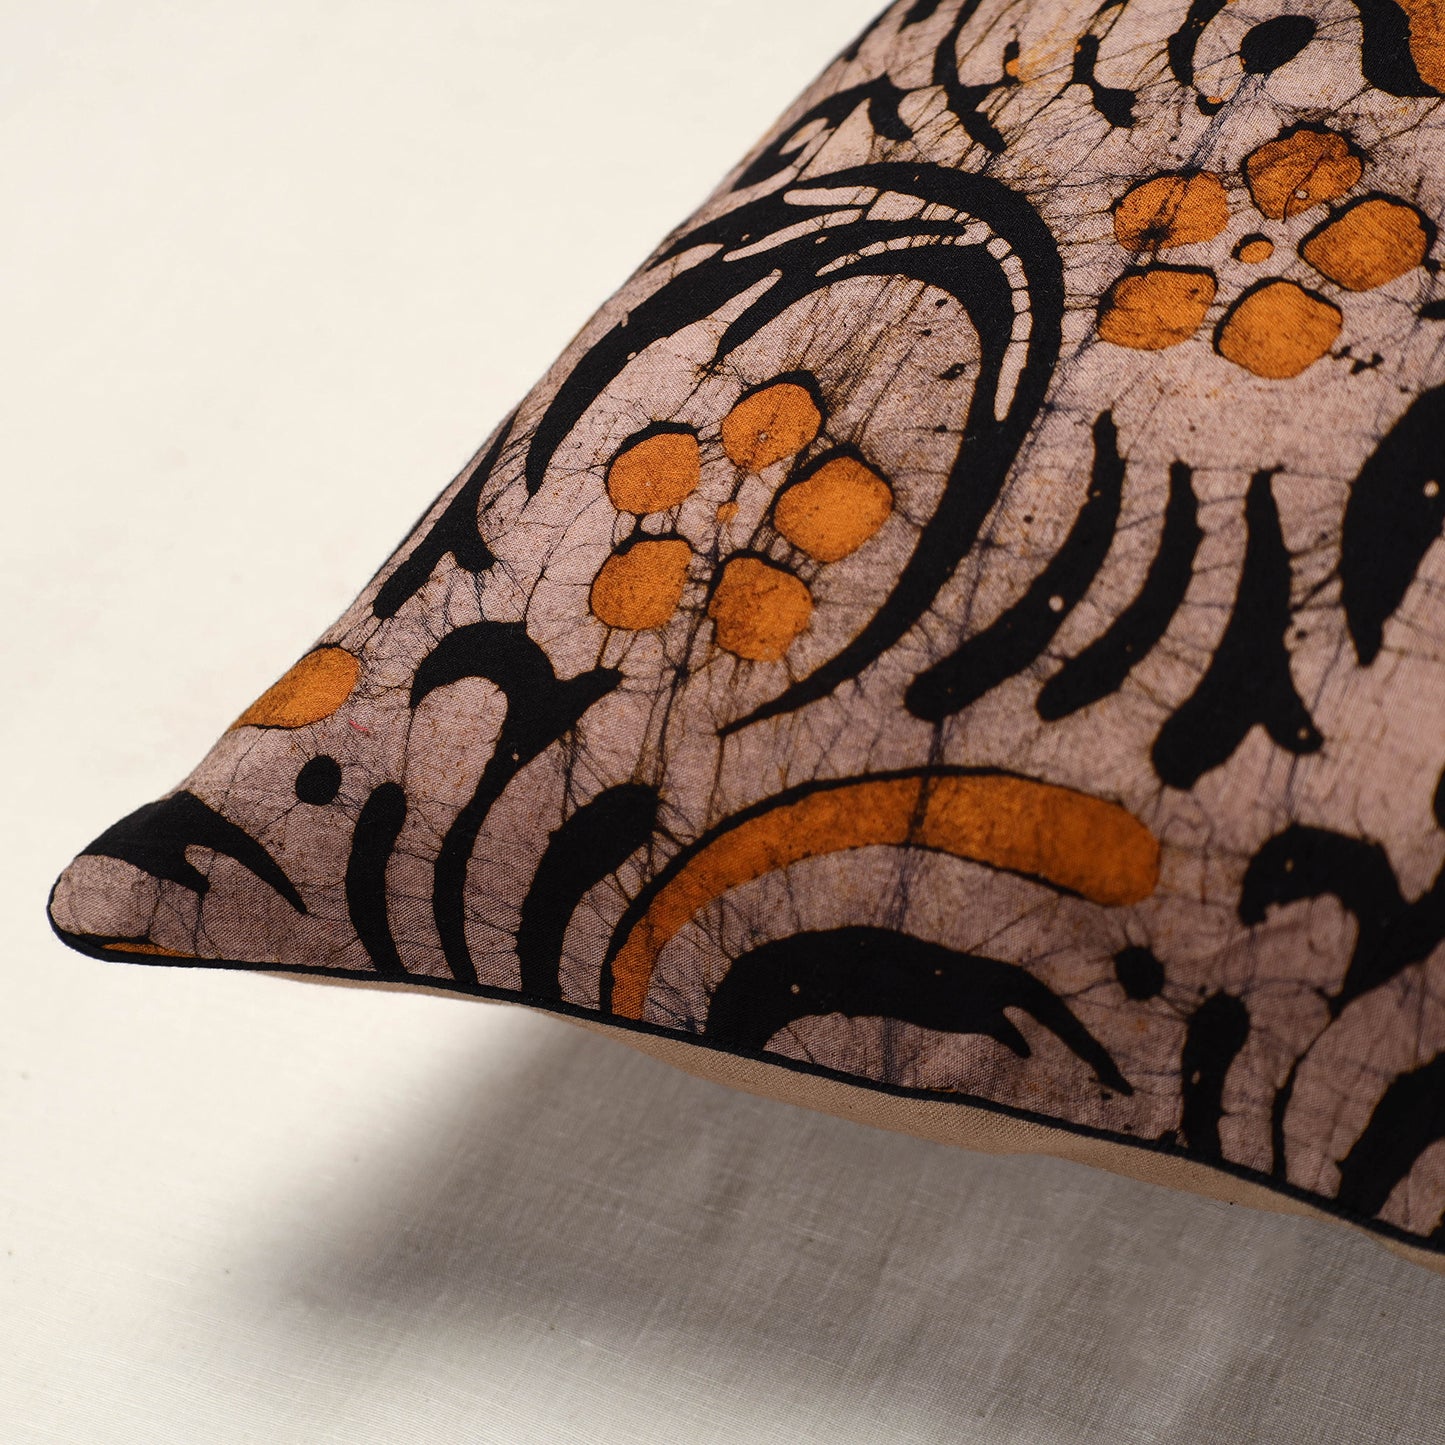 Batik Cushion Cover